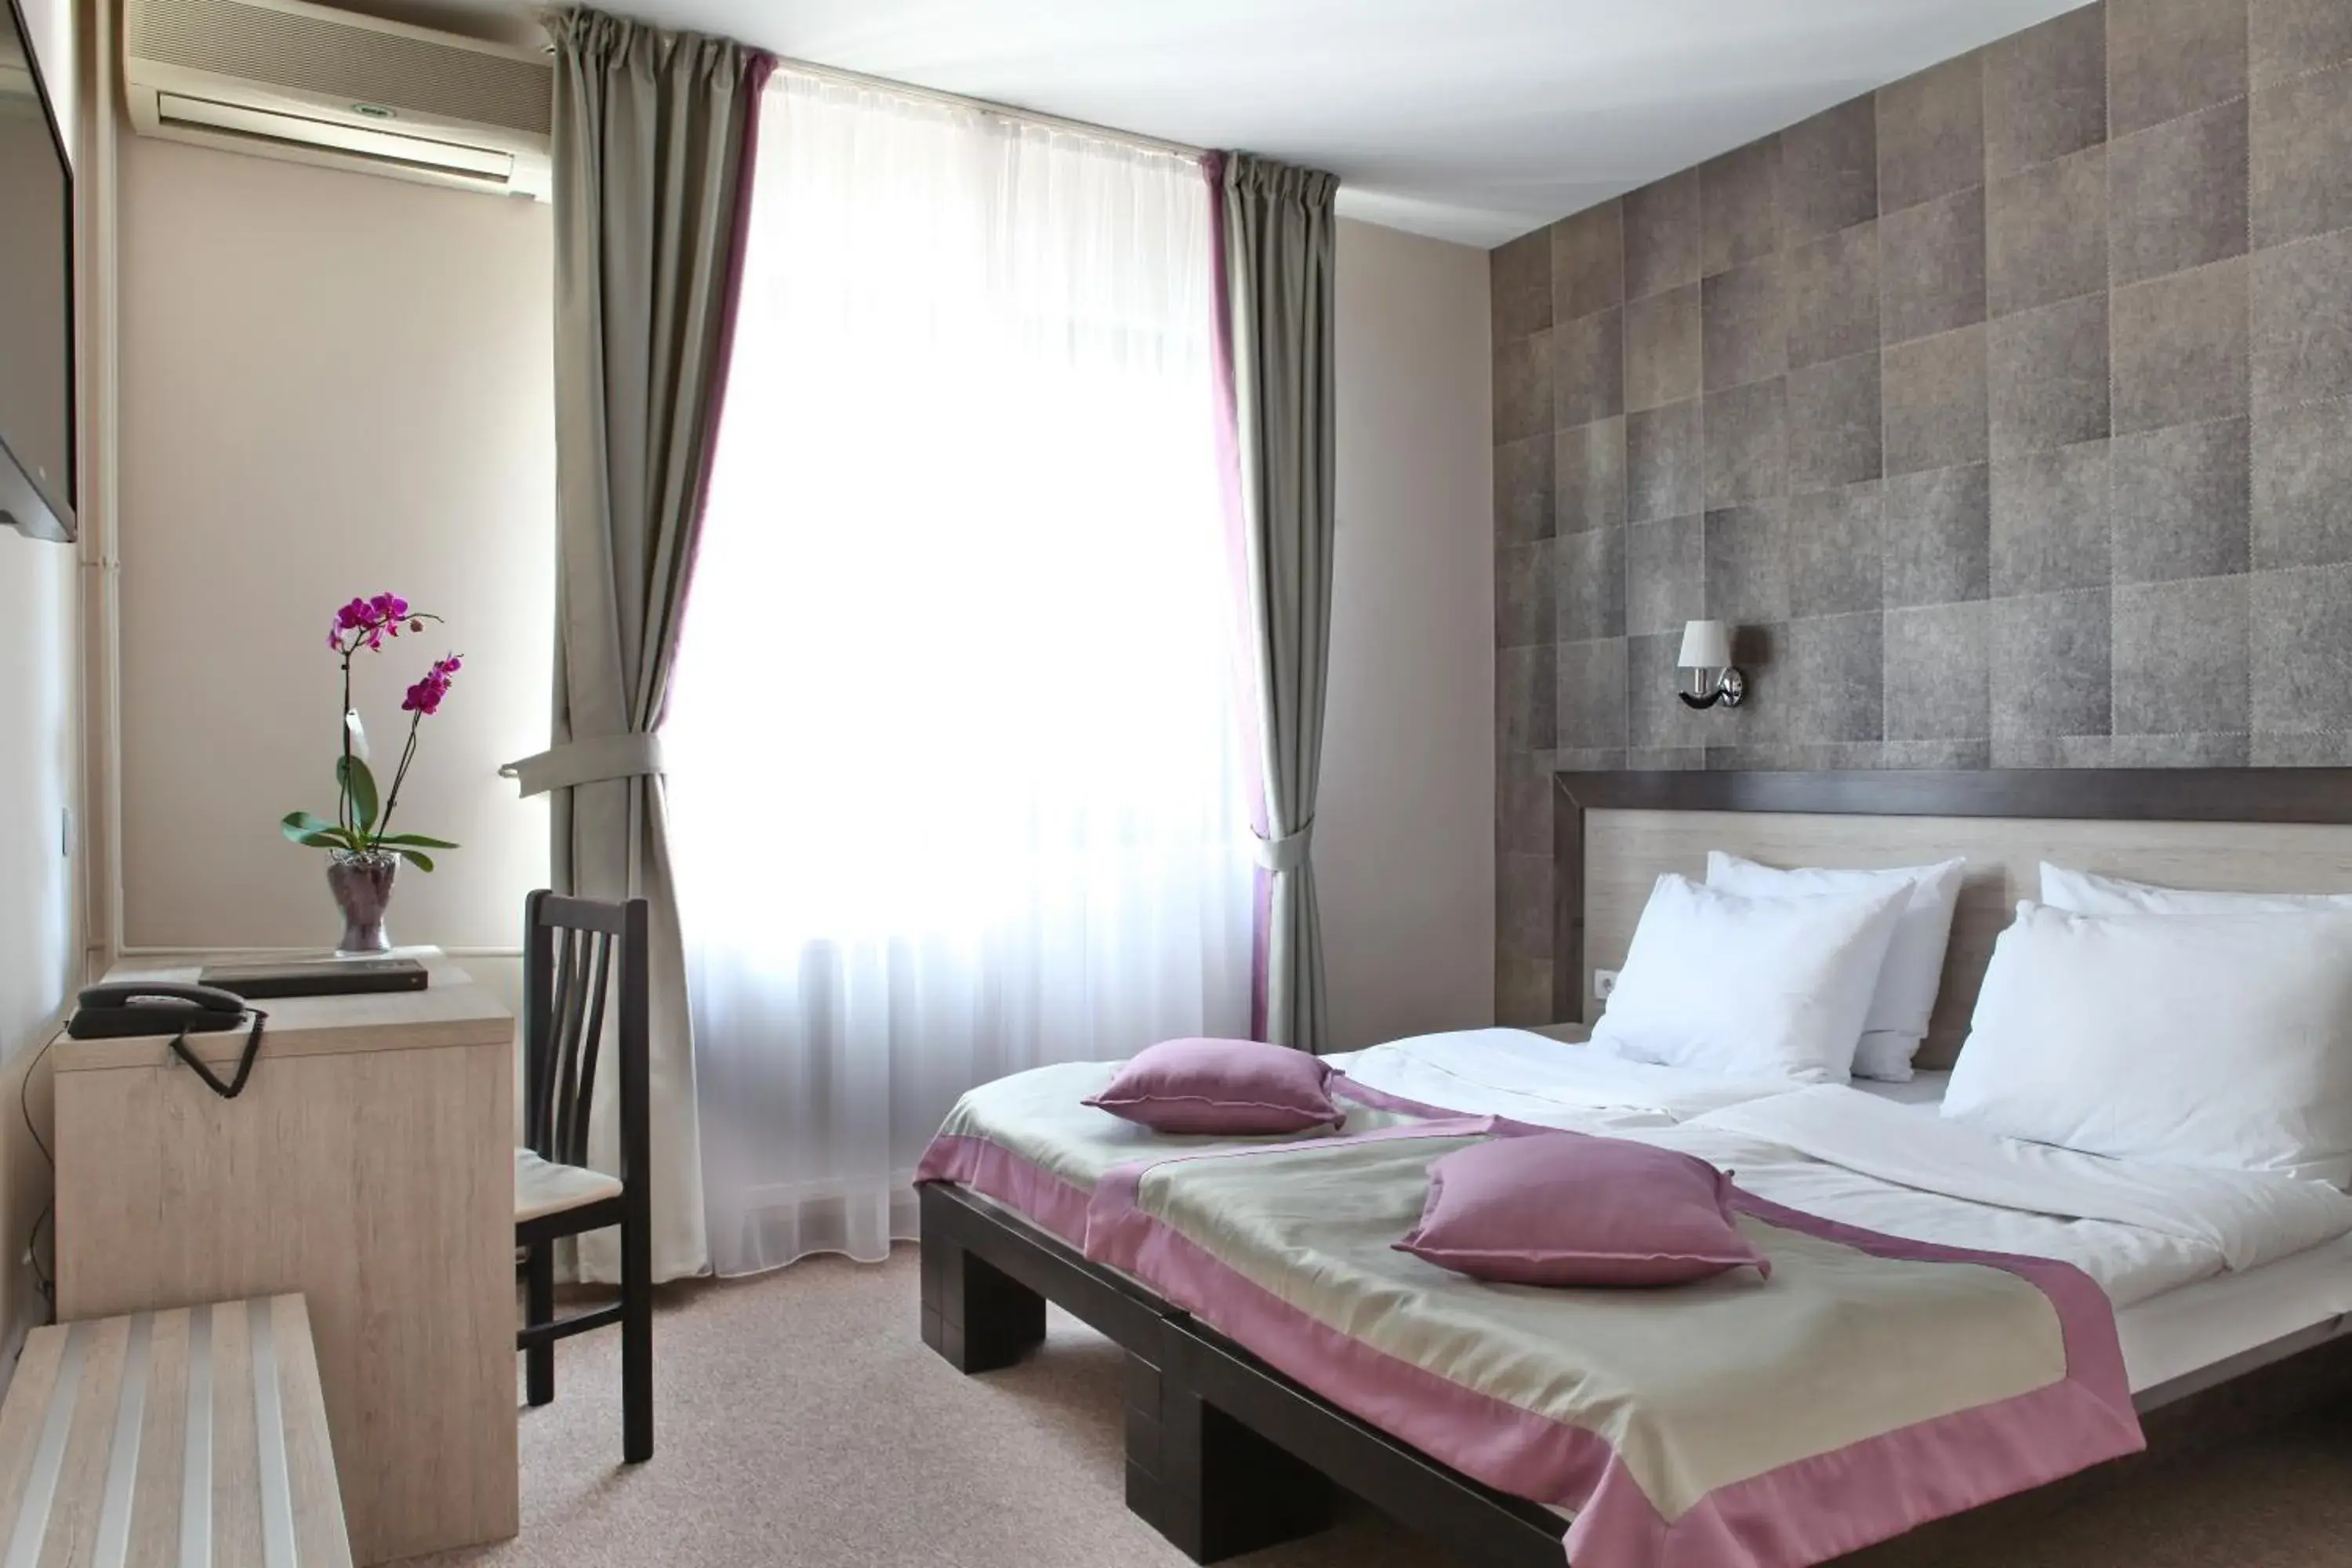 Bed, Room Photo in Garni Hotel Vozarev